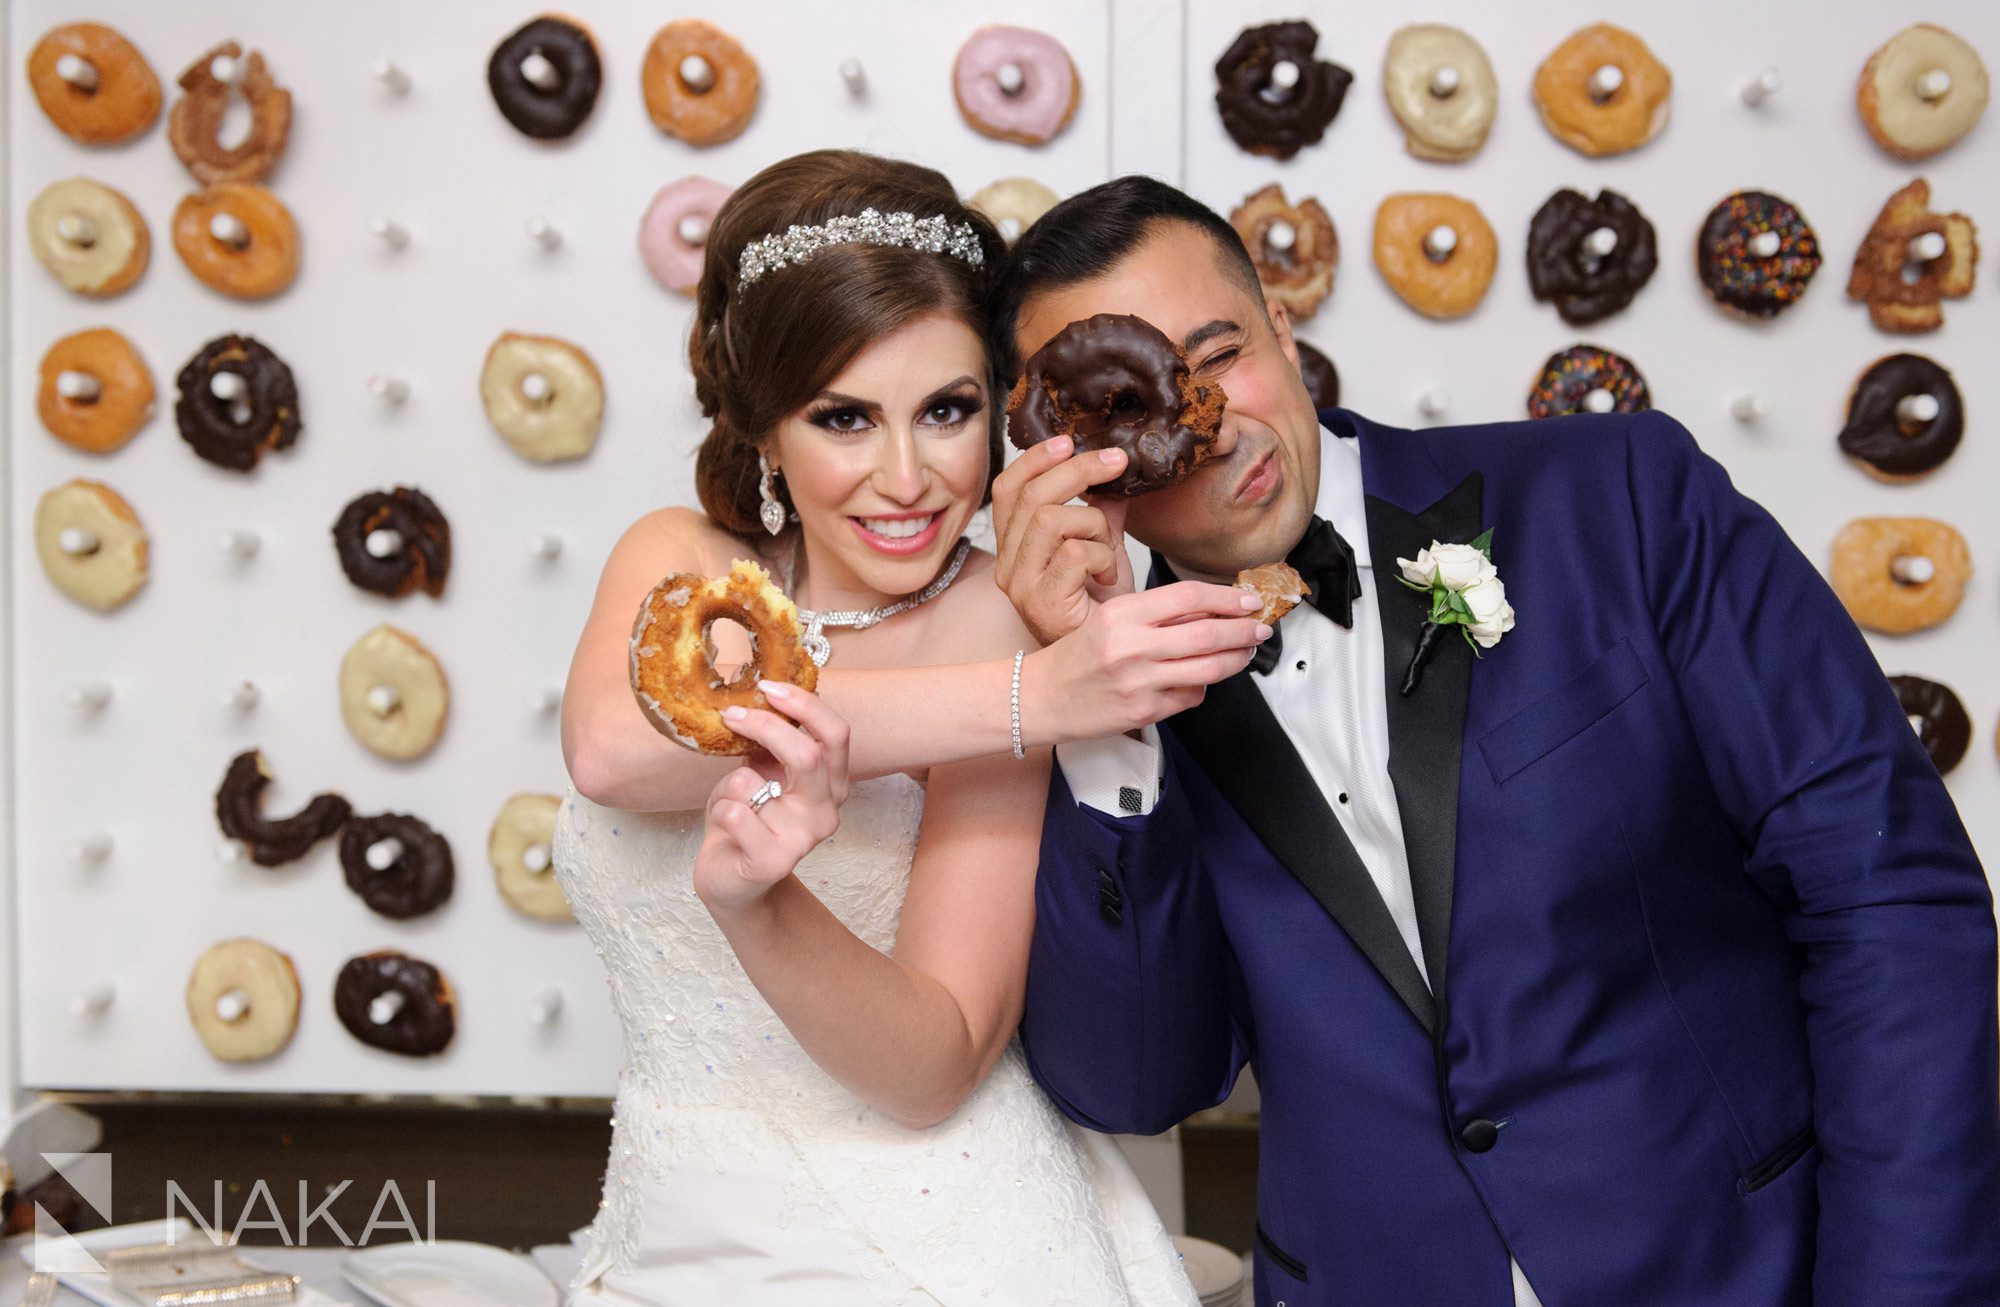 doughnut donut wall wedding reception idea